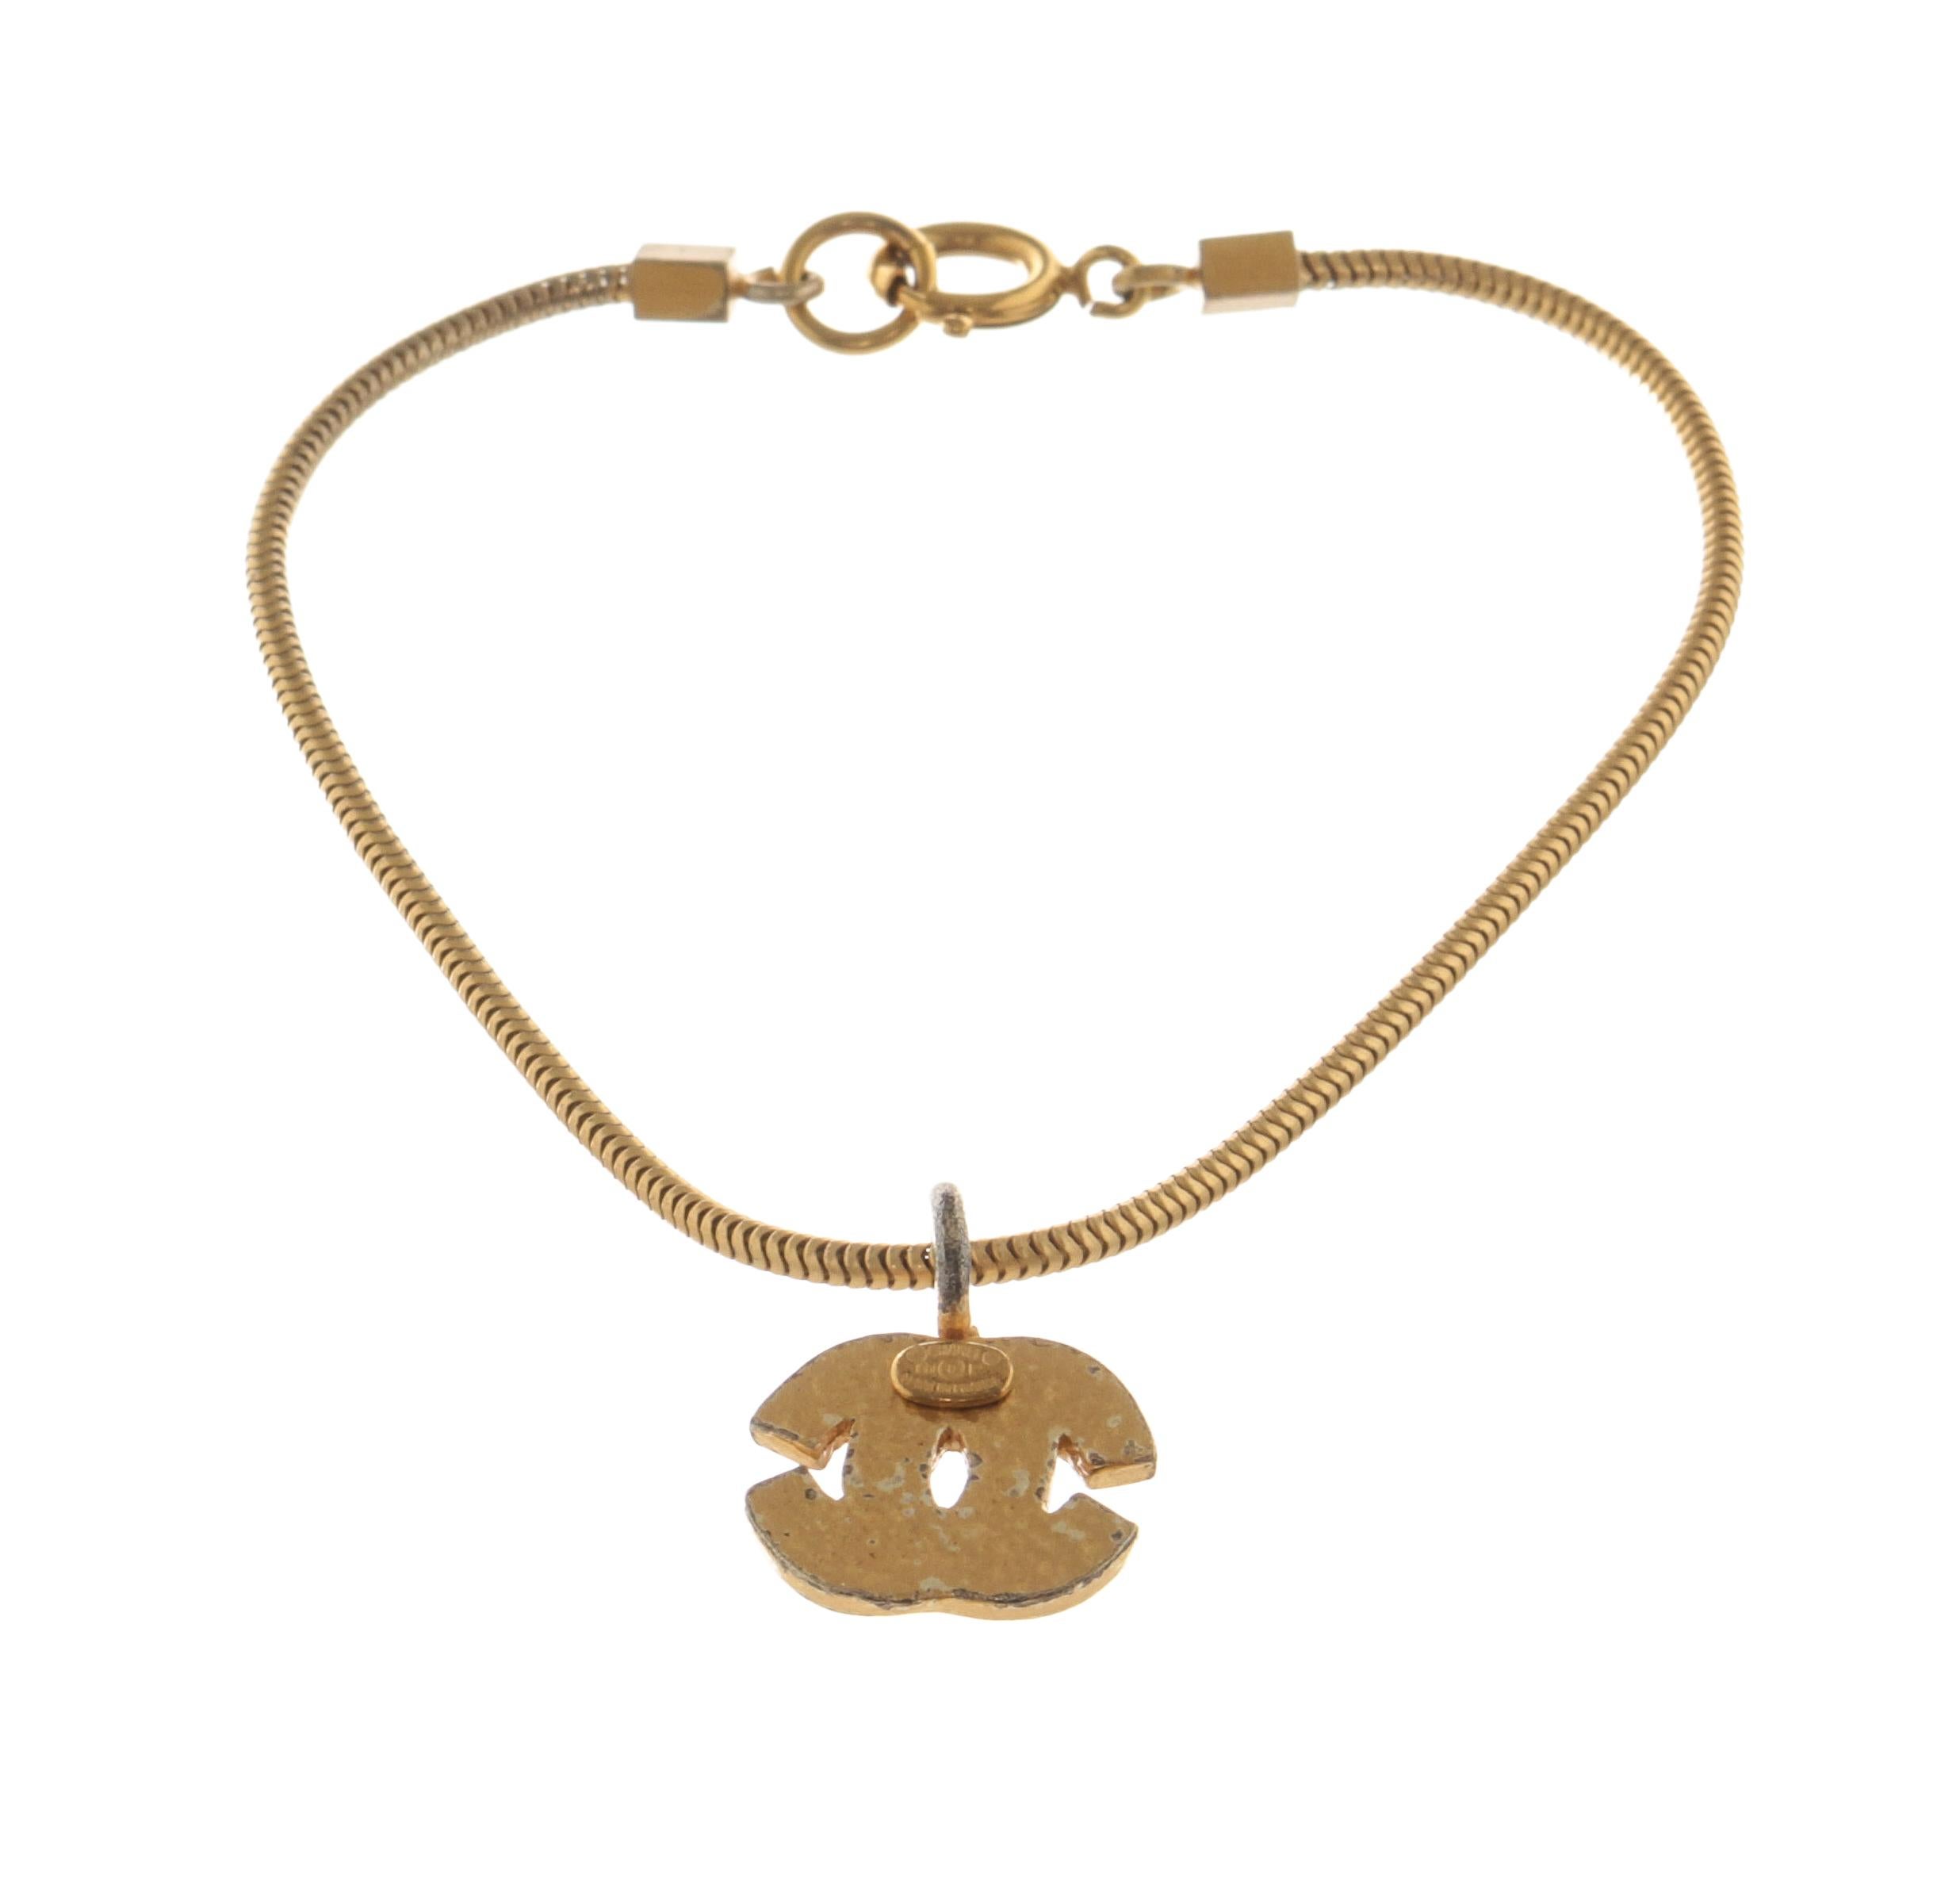 Bracelet Chanel CC Logo avec un pendentif logo en métal. Fabriqué en France.

770024MSC